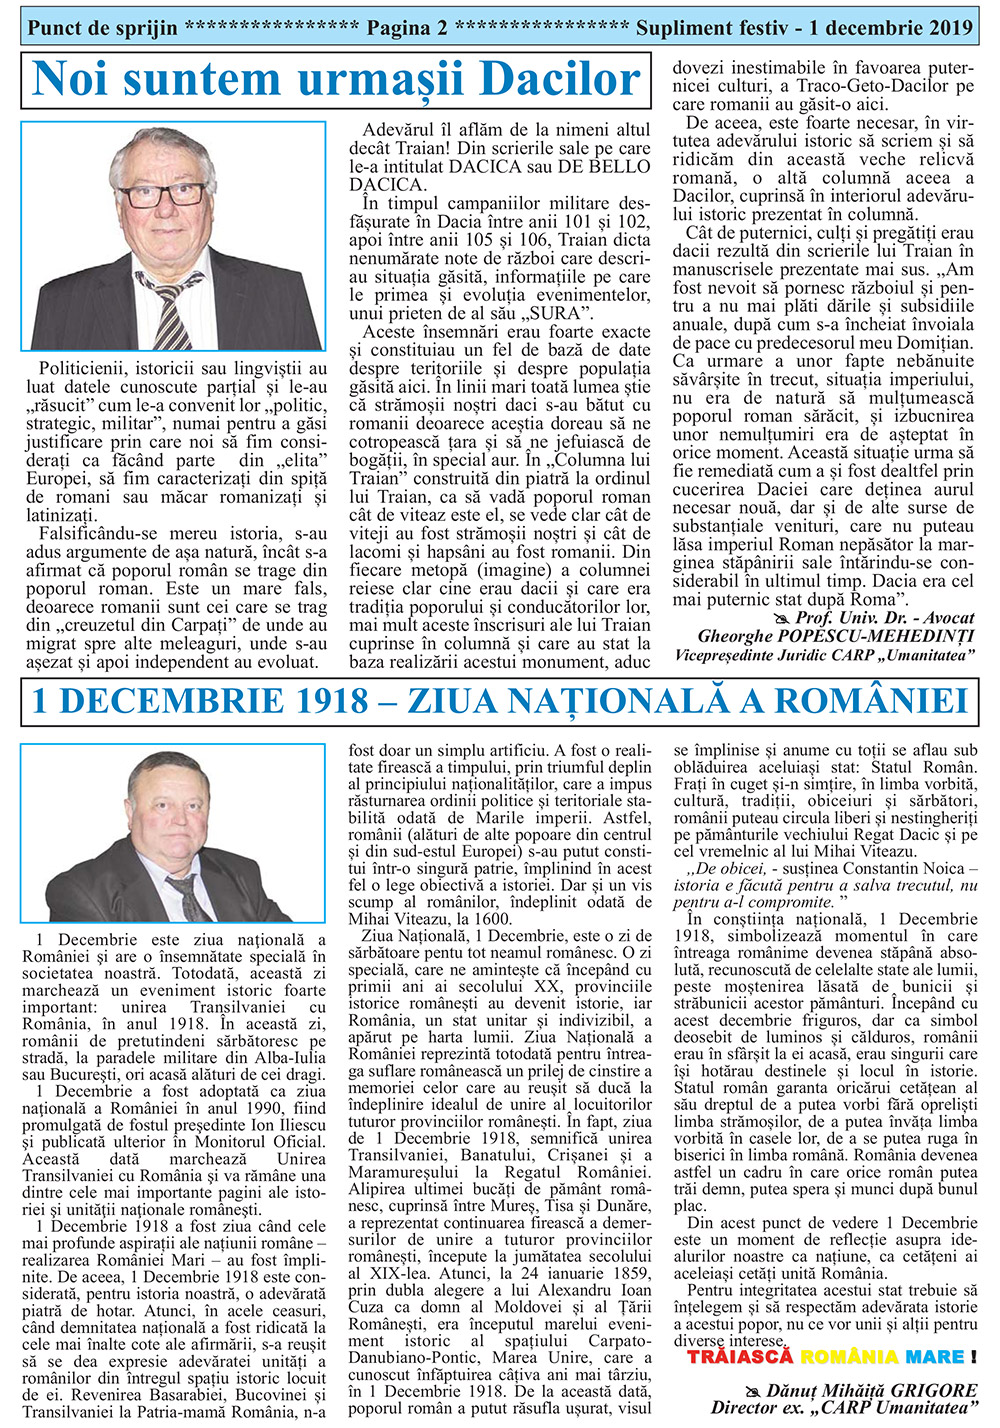 Ziarul Punct de sprijin al CARP Umanitatea supliment 1 decembrie 2019